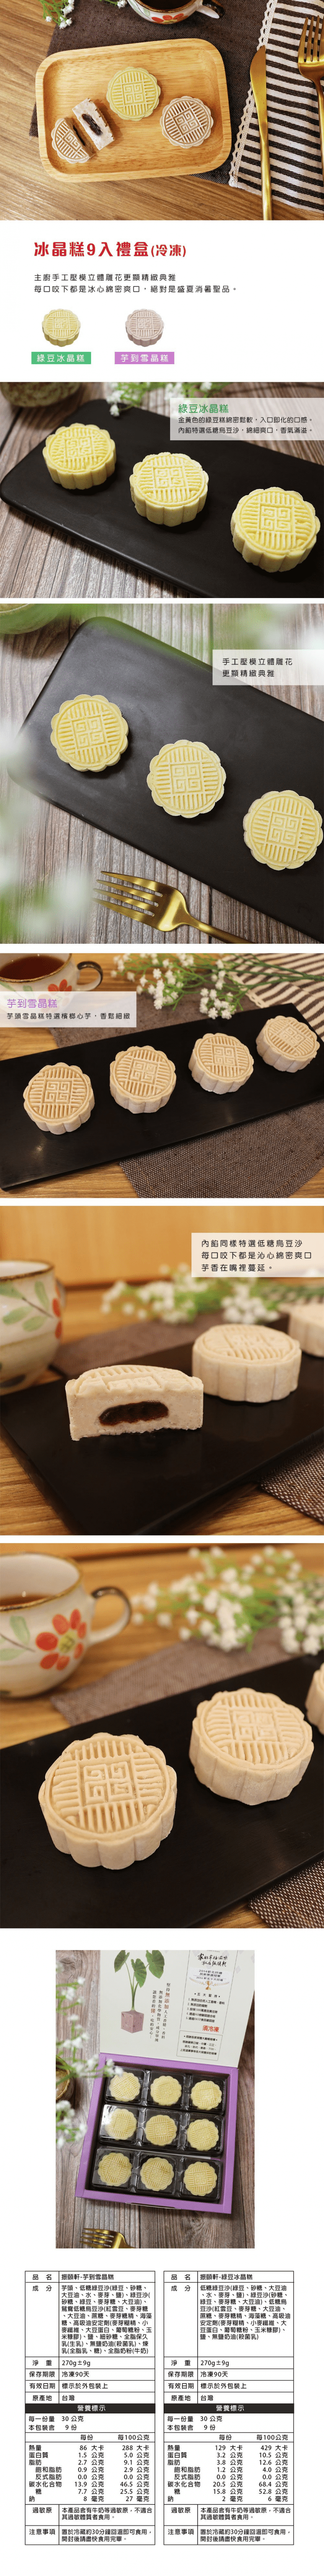 【振頤軒】 低糖綿密冰晶糕禮盒(9入/盒) 低糖烏豆沙內餡 綠豆糕/芋頭糕